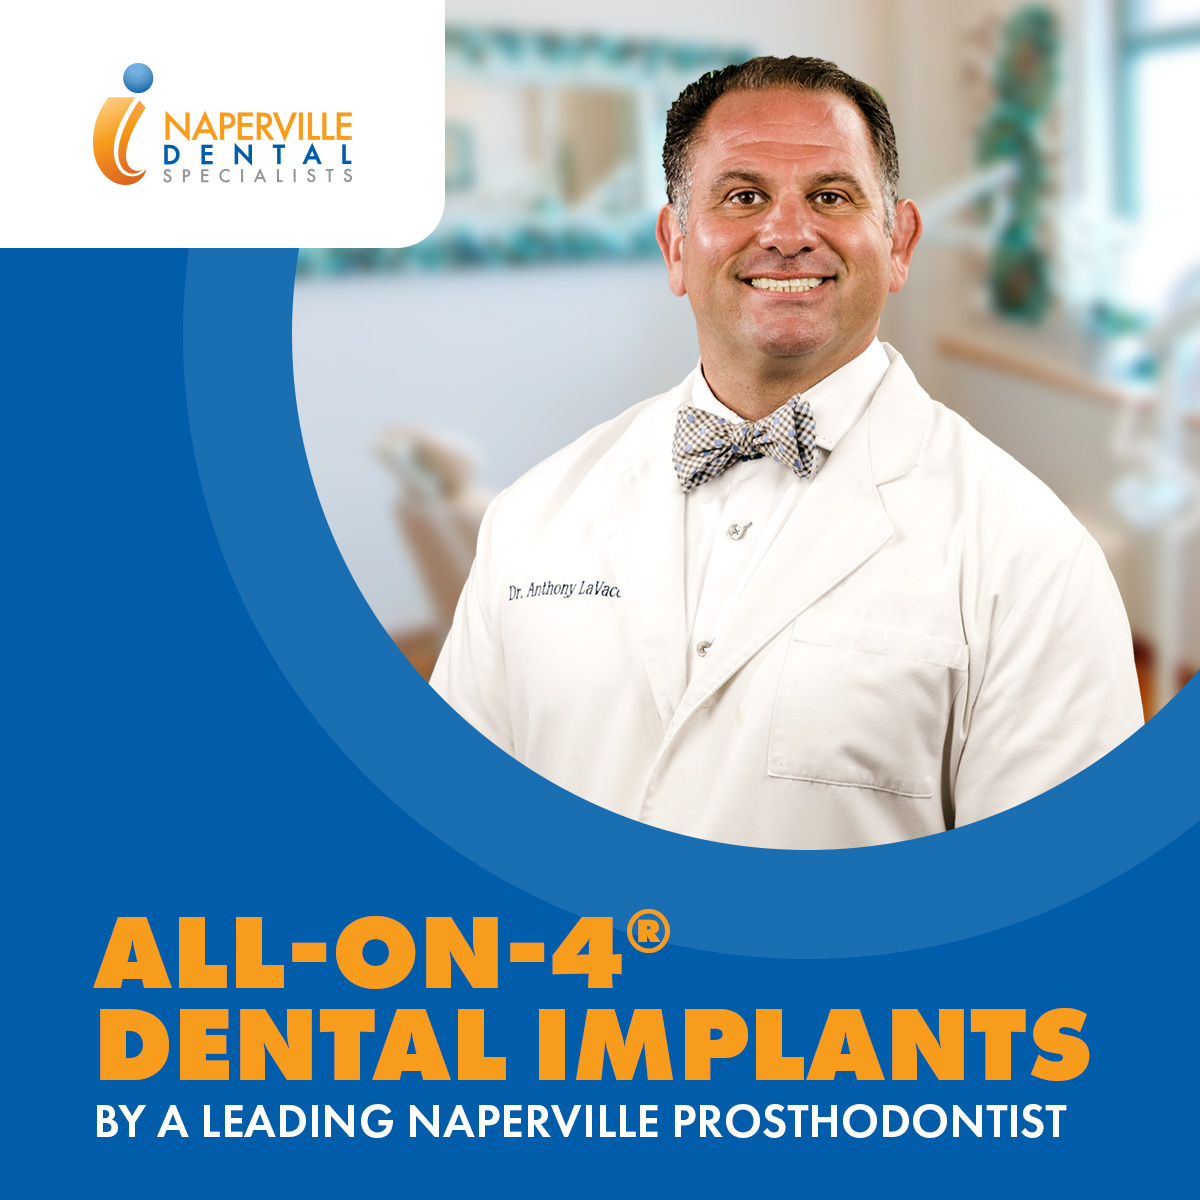 All-on-4 dental implants - Leading Naperville Prosthodontist